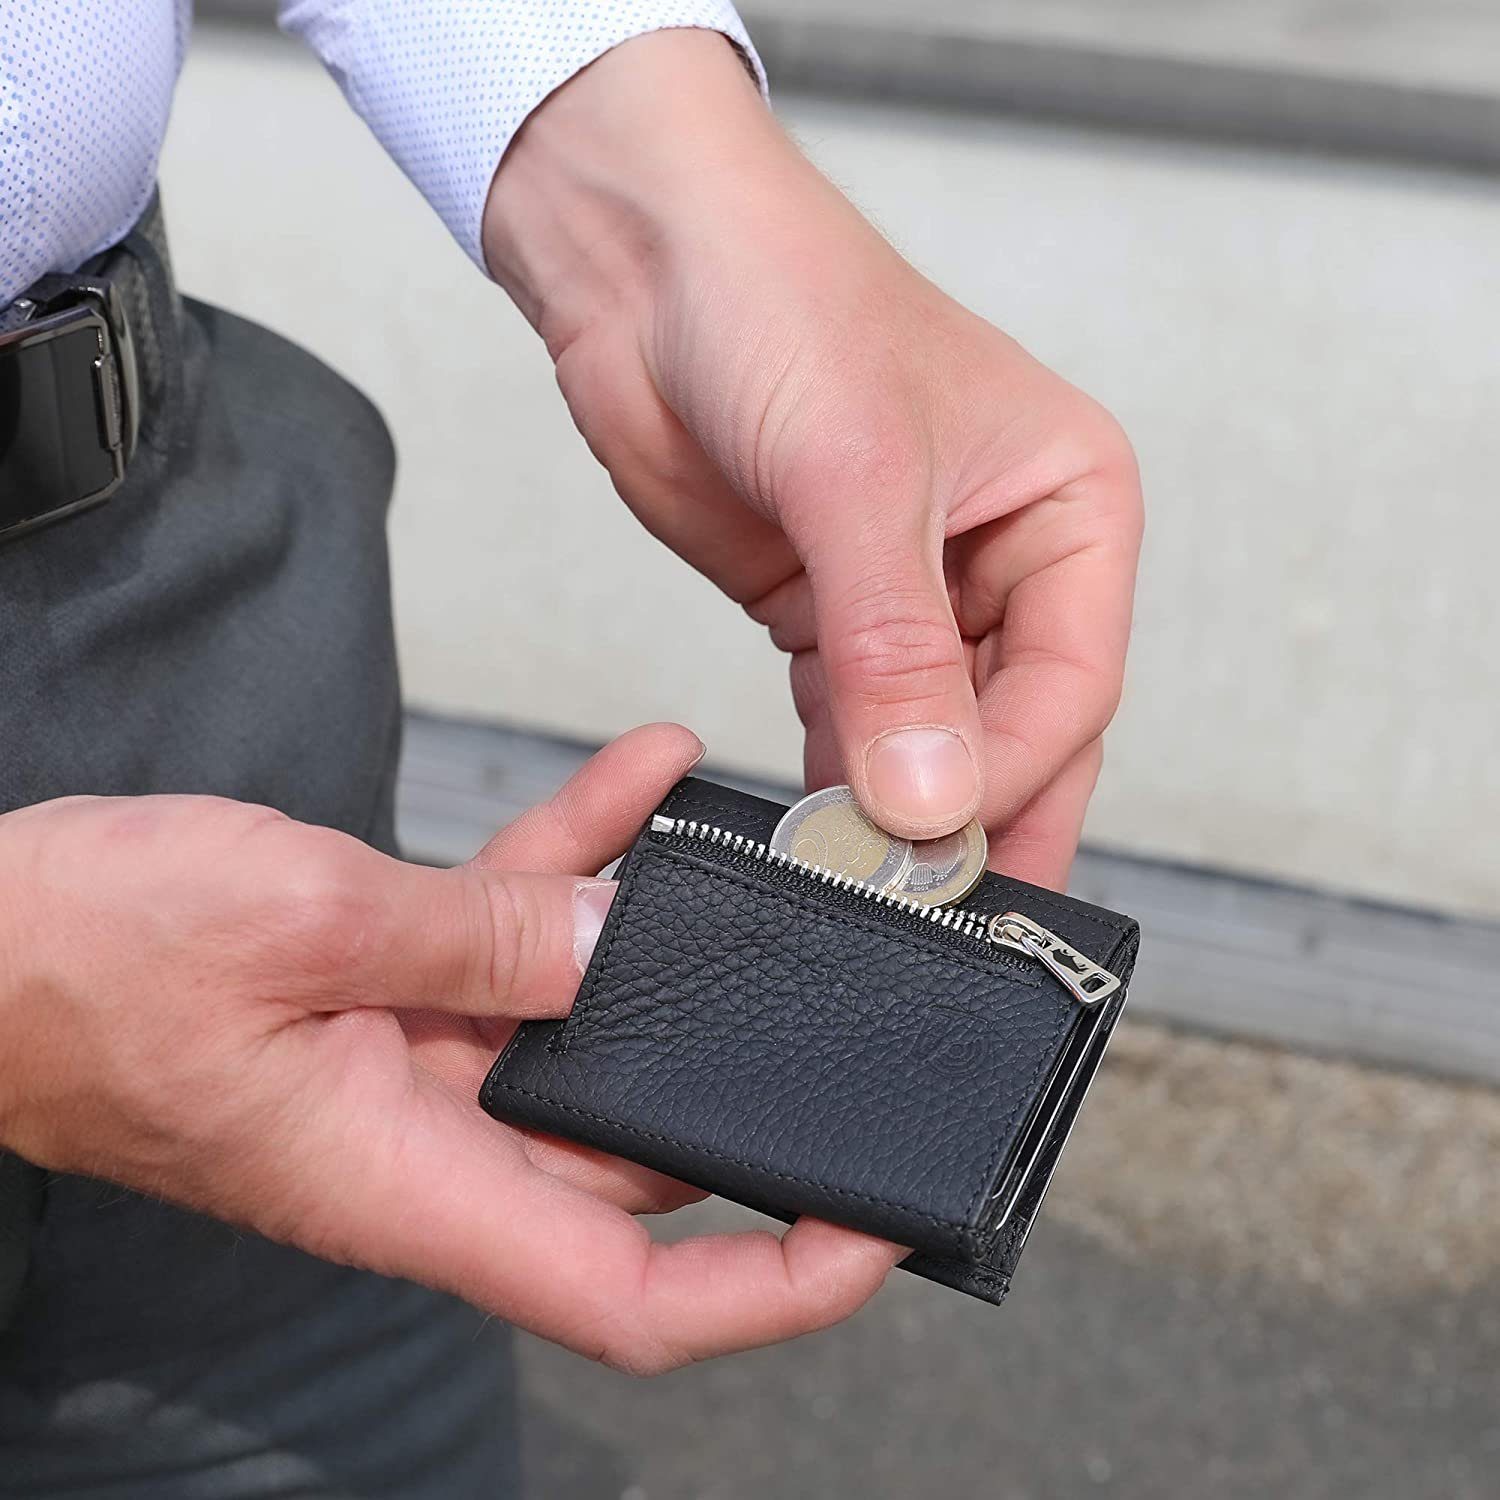 Schwarz Slim echt Wallet [12 Europe in [RFID-Schutz], Matt mit Macde Leder, Riga RFID Karten] Münzfach Slimwallet Pelle Schutz, Solo Brieftasche